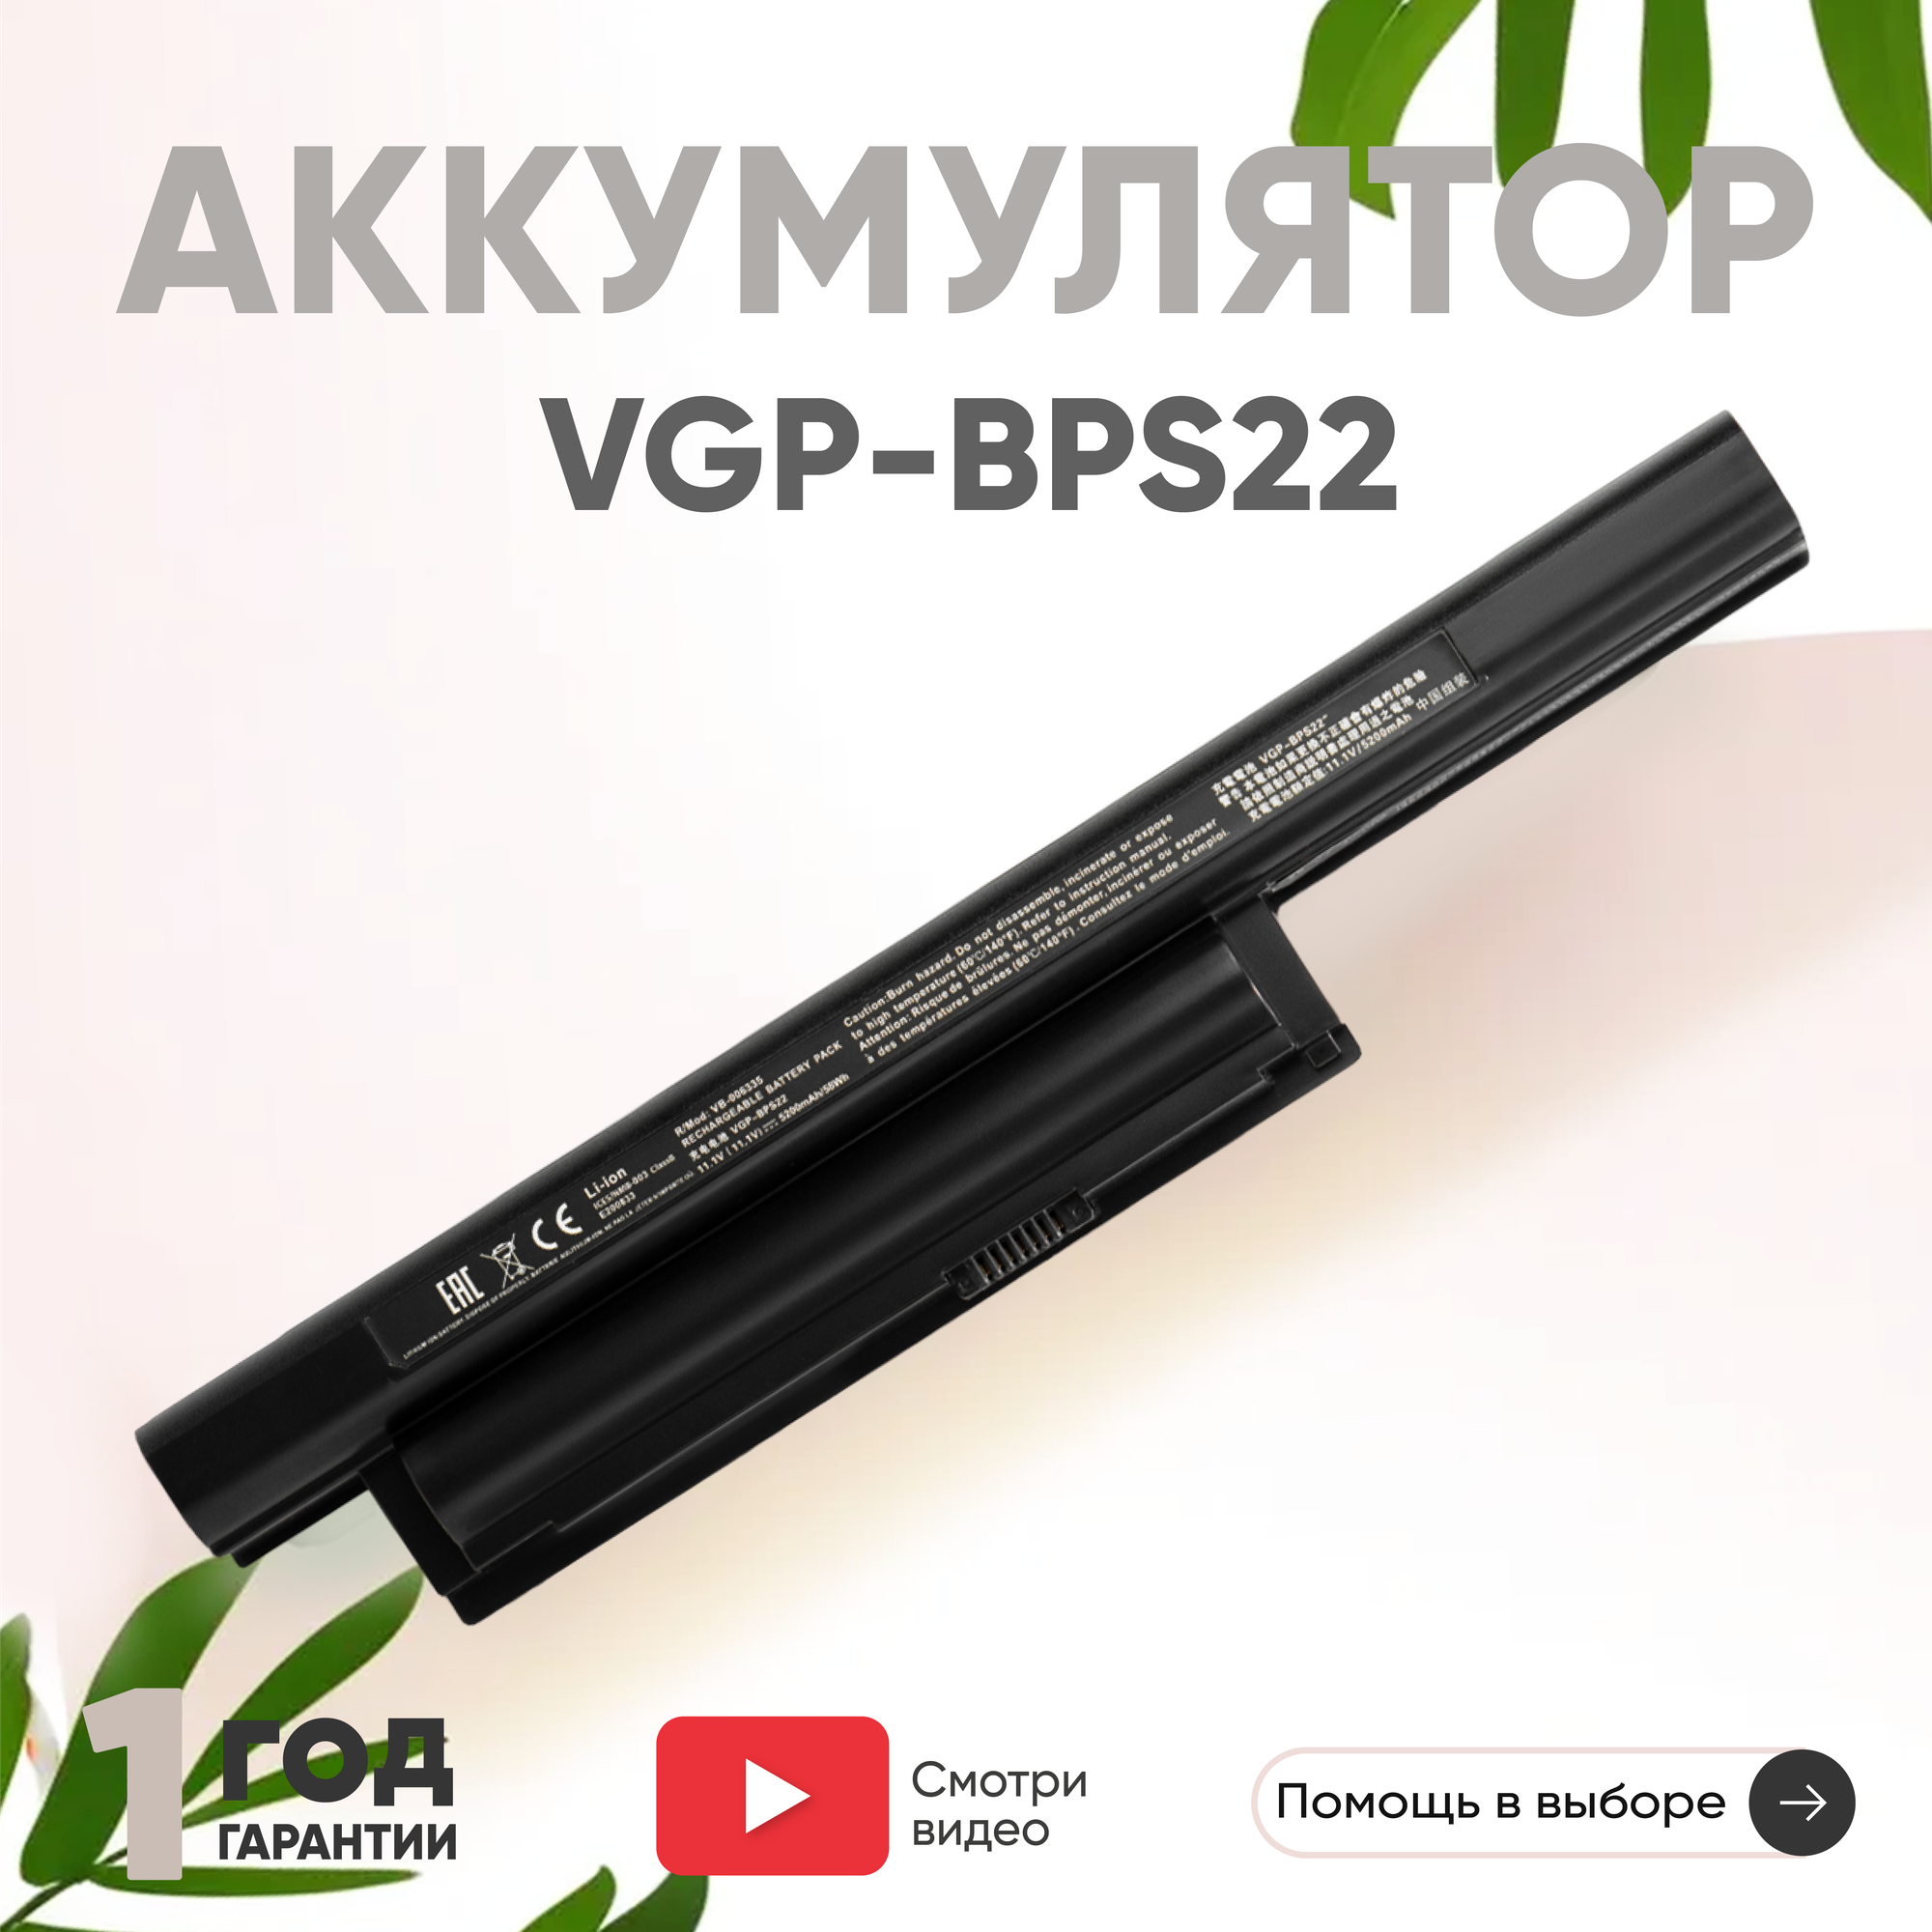 Аккумулятор (АКБ, аккумуляторная батарея) VGP-BPS22 для ноутбука Sony VPCE, 11.1В, 5200мАч, черный